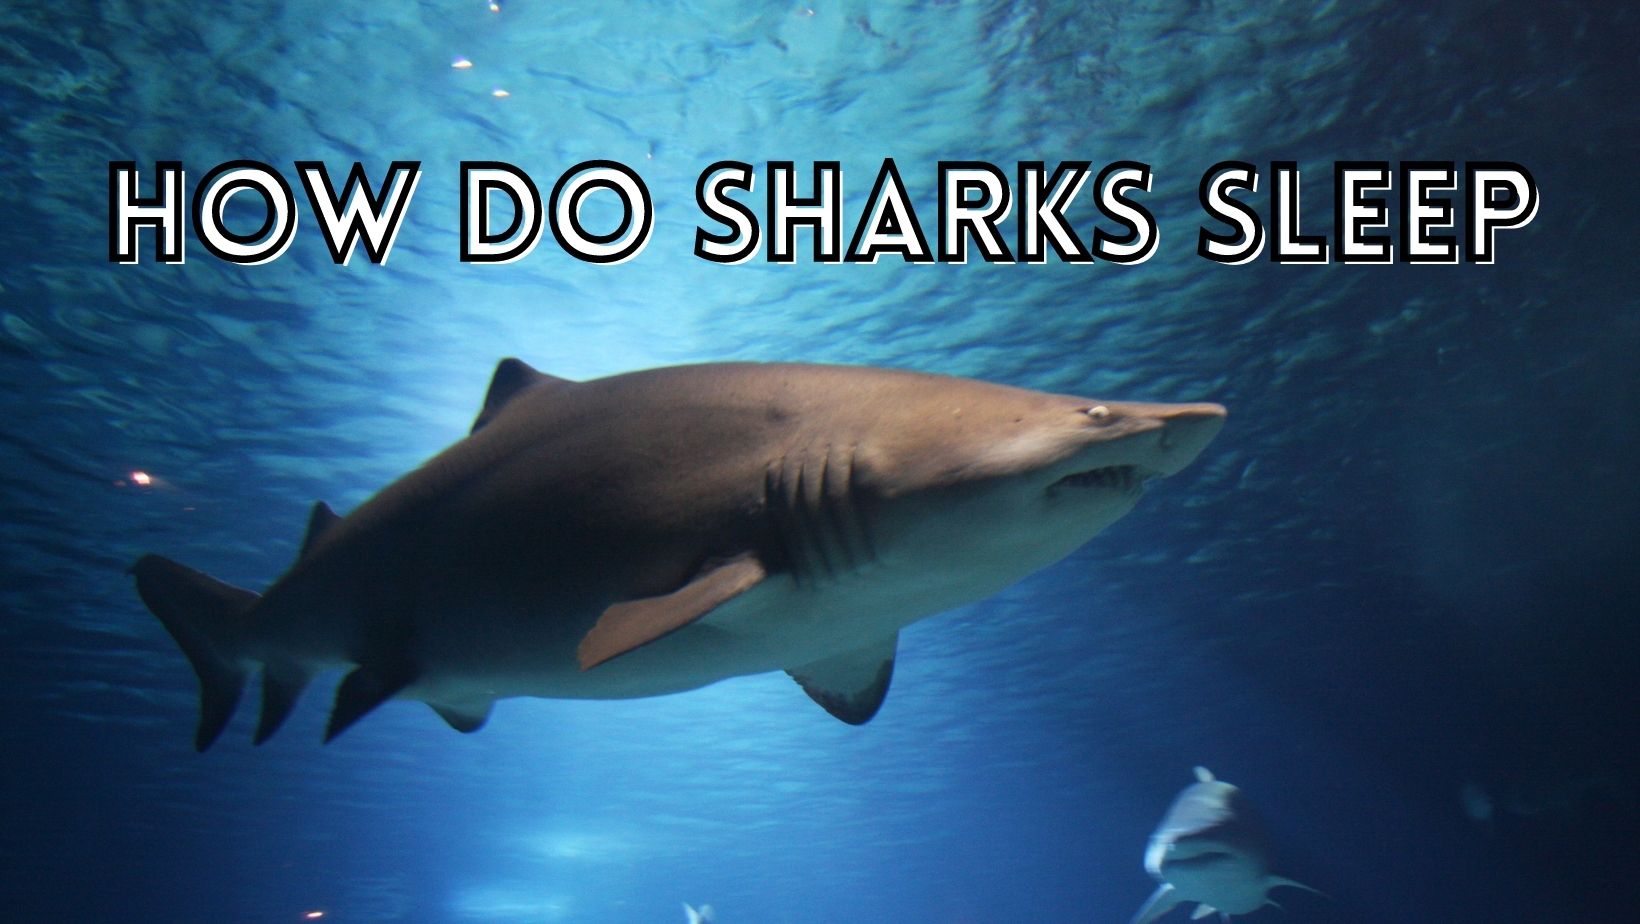 How do sharks sleep